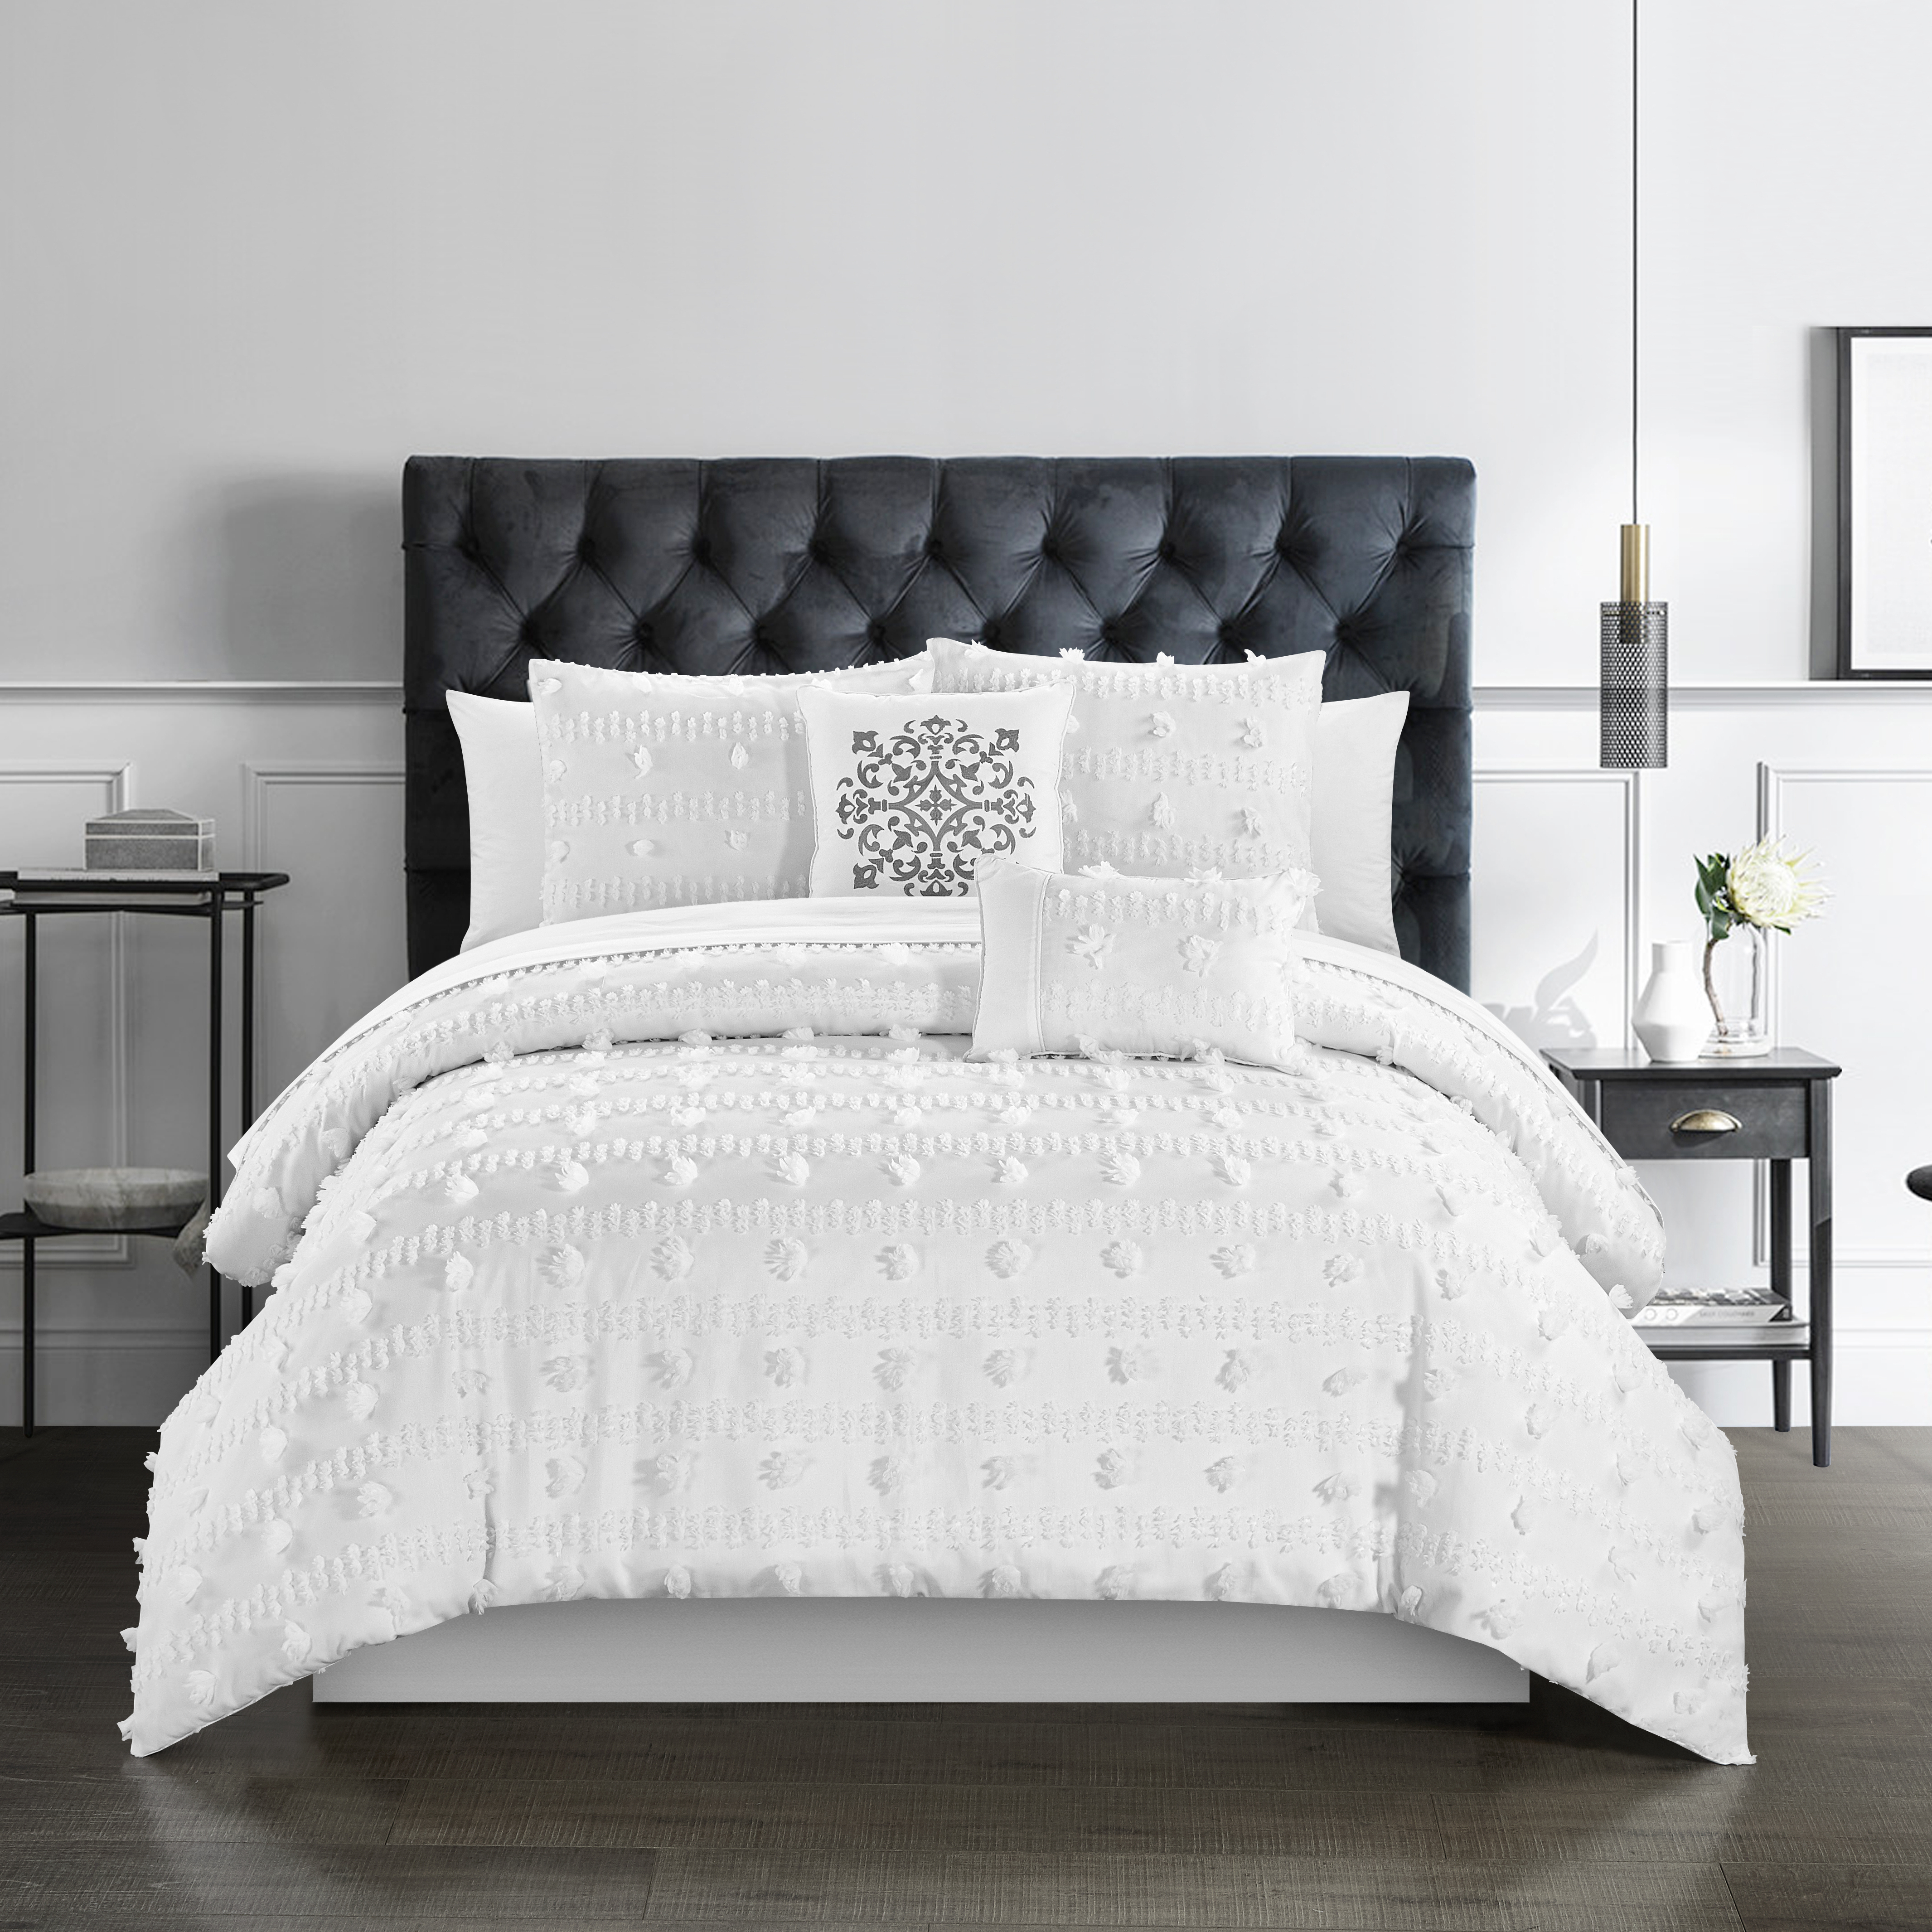 Ahtisa 5 Piece Comforter Set Jacquard Floral Applique Design Bedding - Blush, King